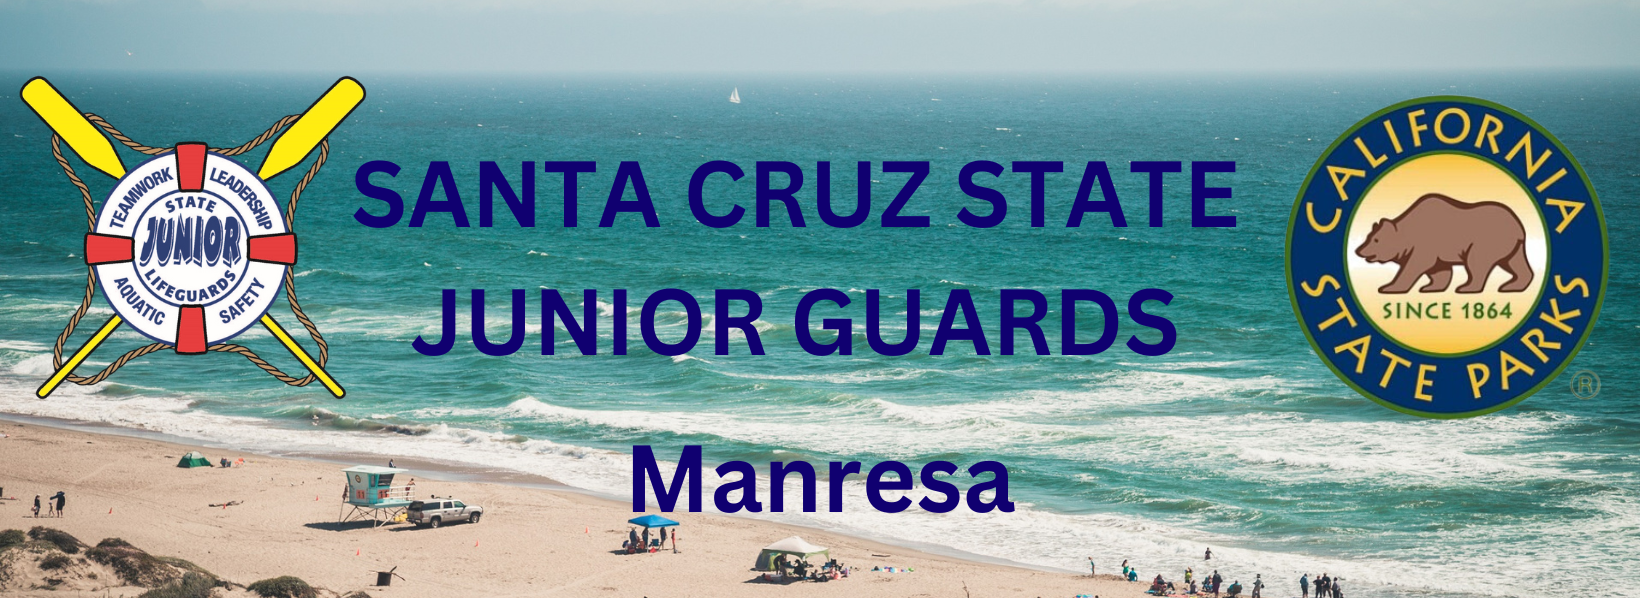 Santa Cruz State Junior Guards Manresa